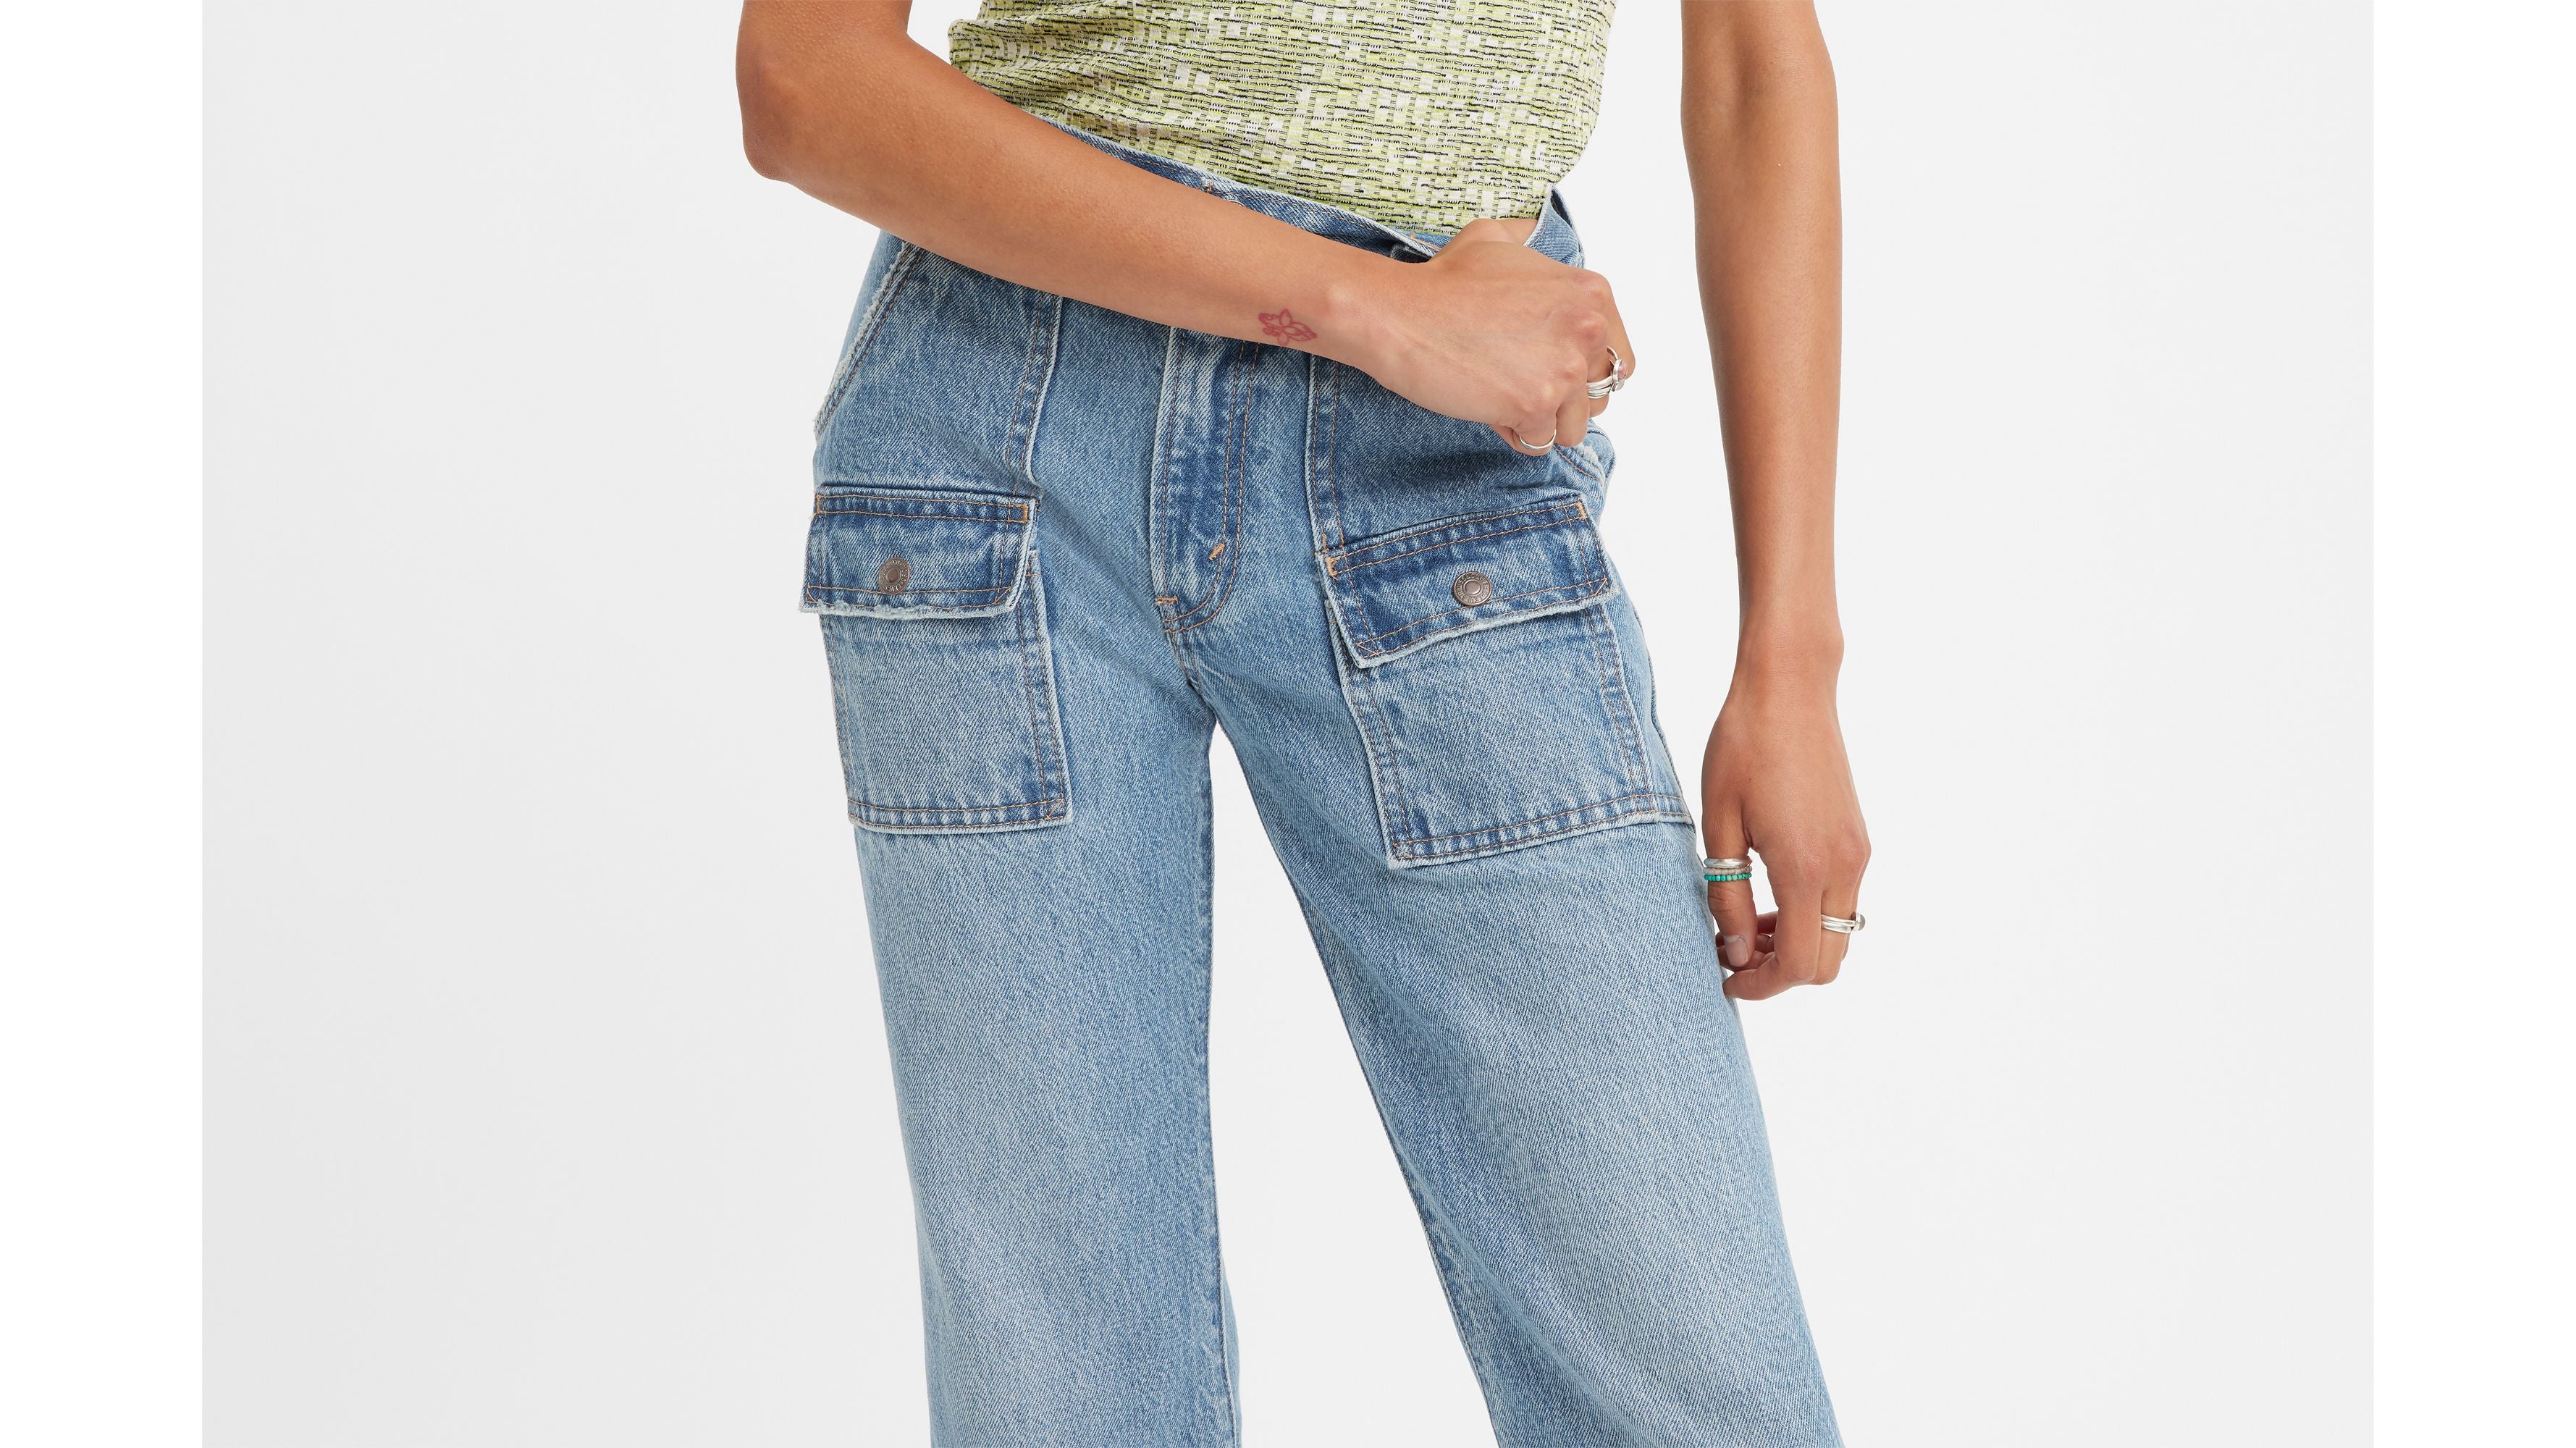 jeans-femme-middy-out-levis-A6304-0000-DM2-SHOP-05